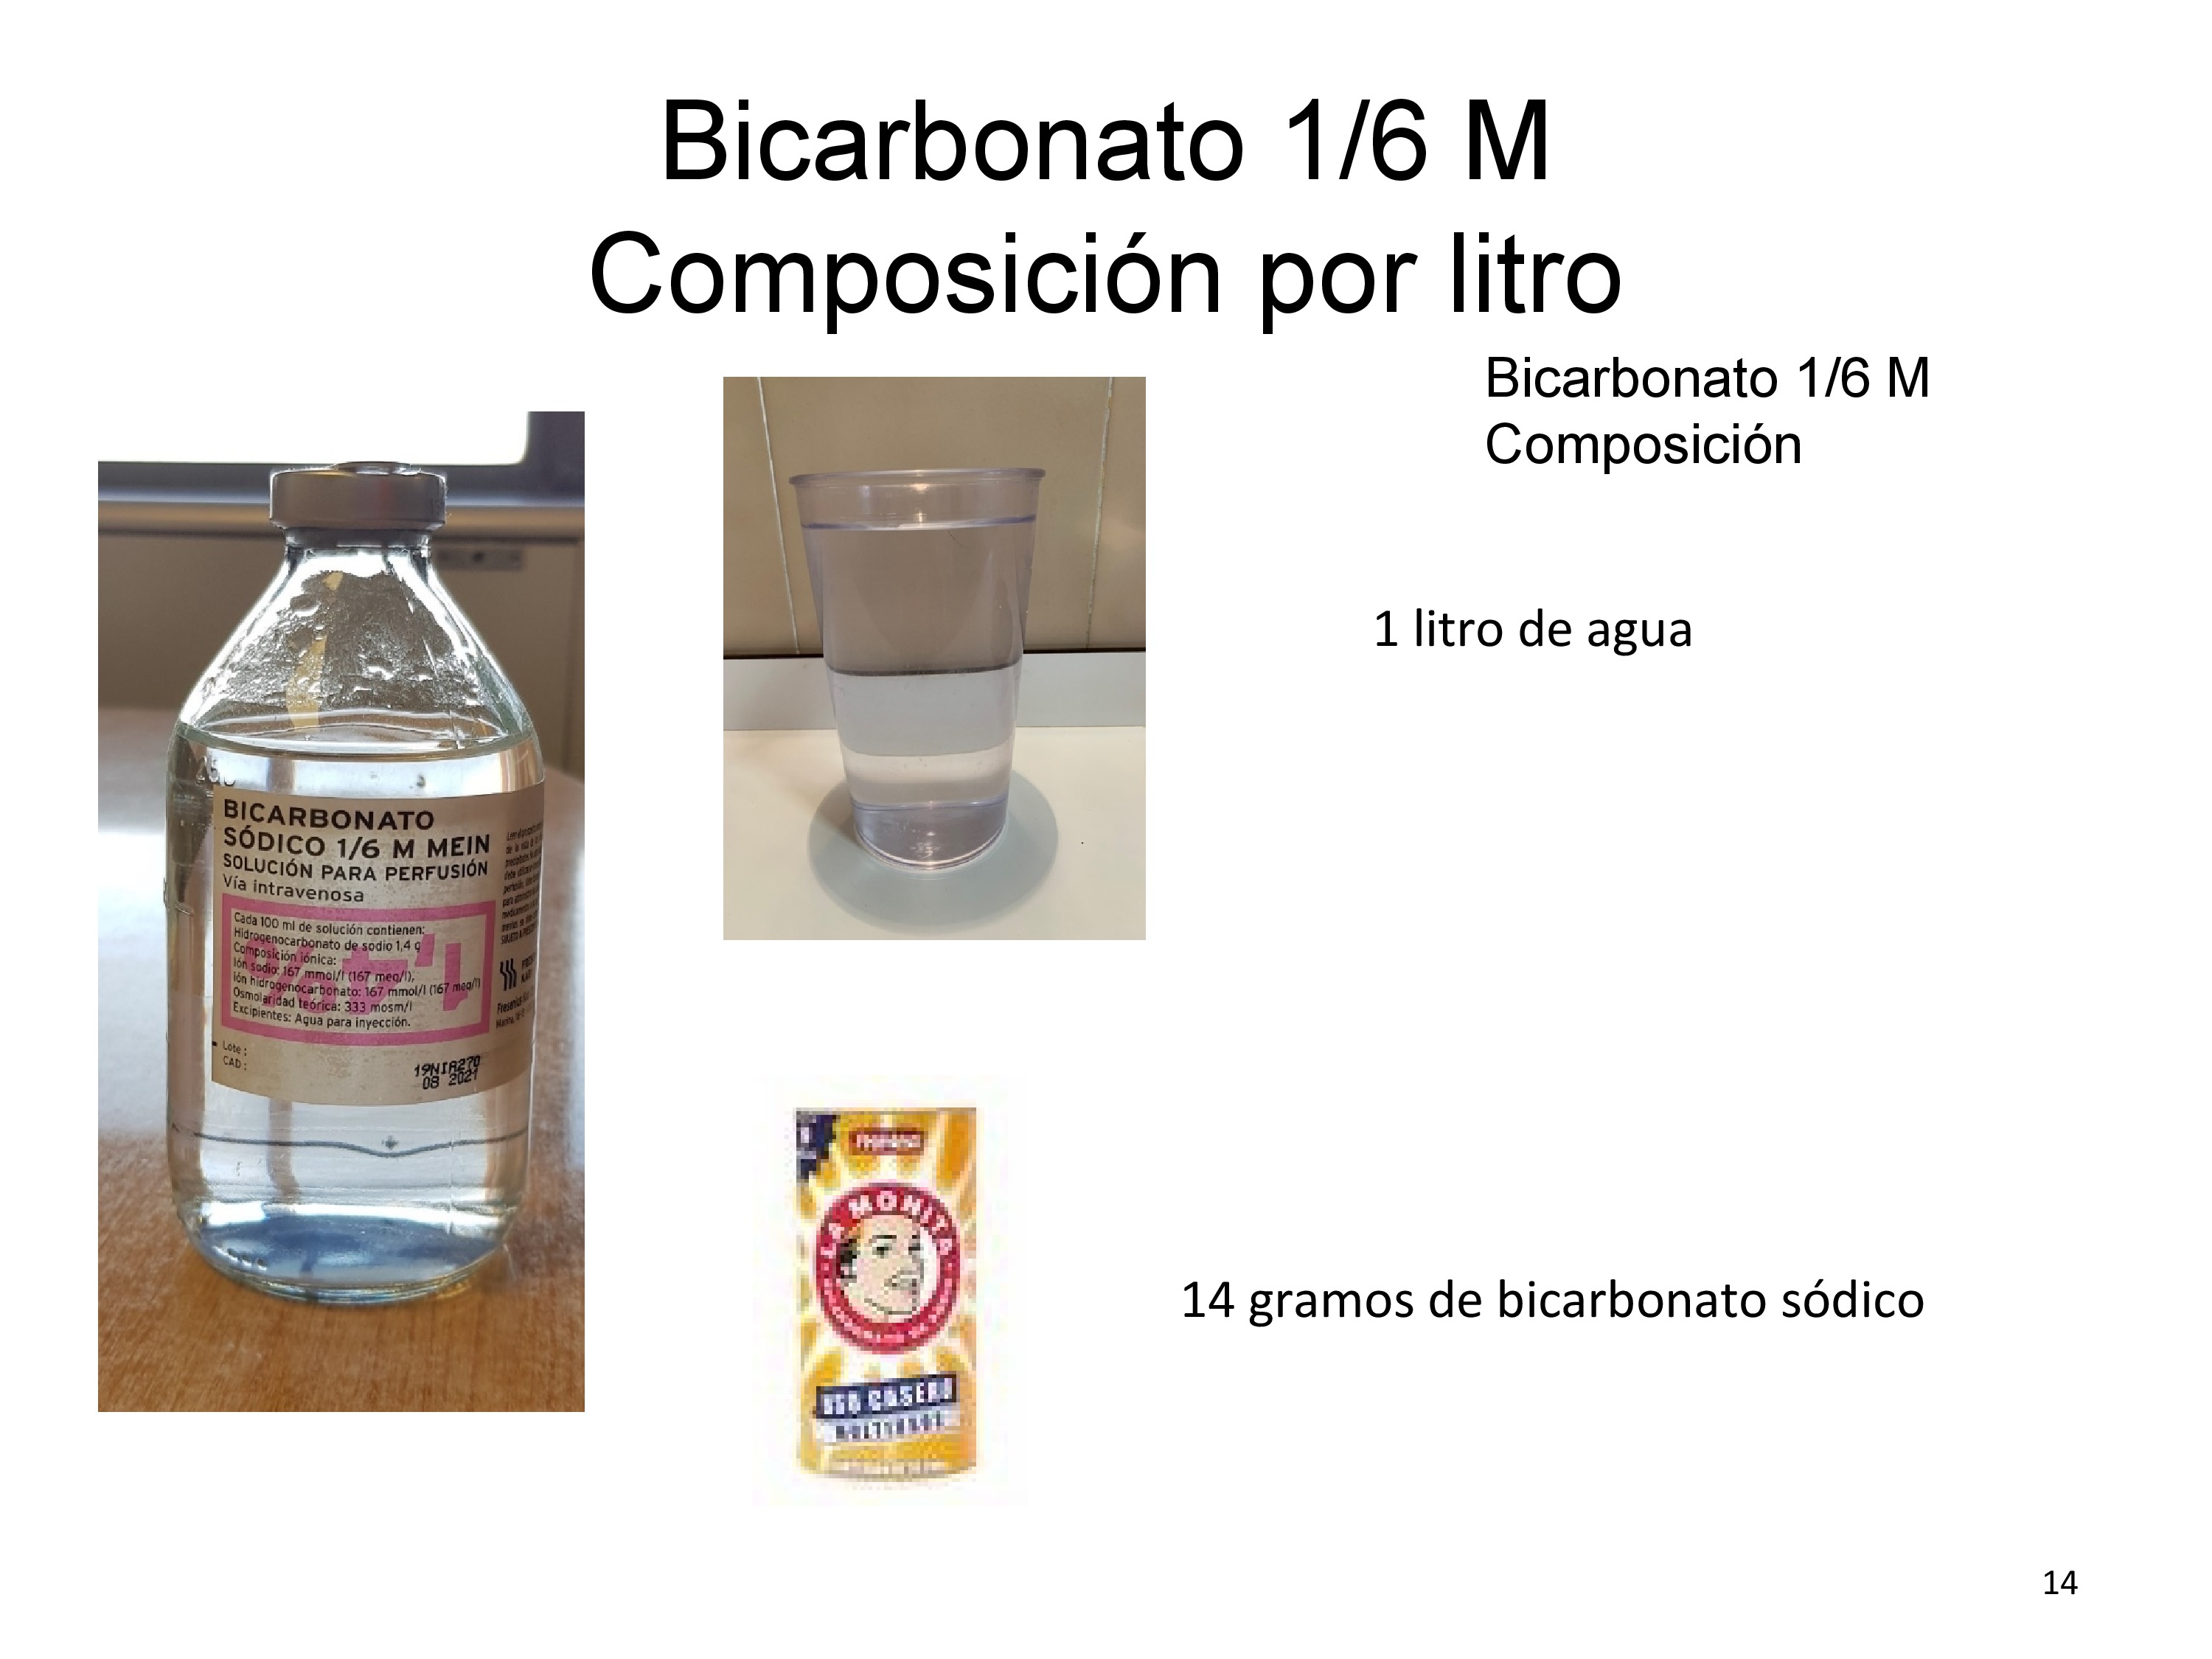 De un modo gráfico se señala la composición del suero con bicarbonato 1/6 M